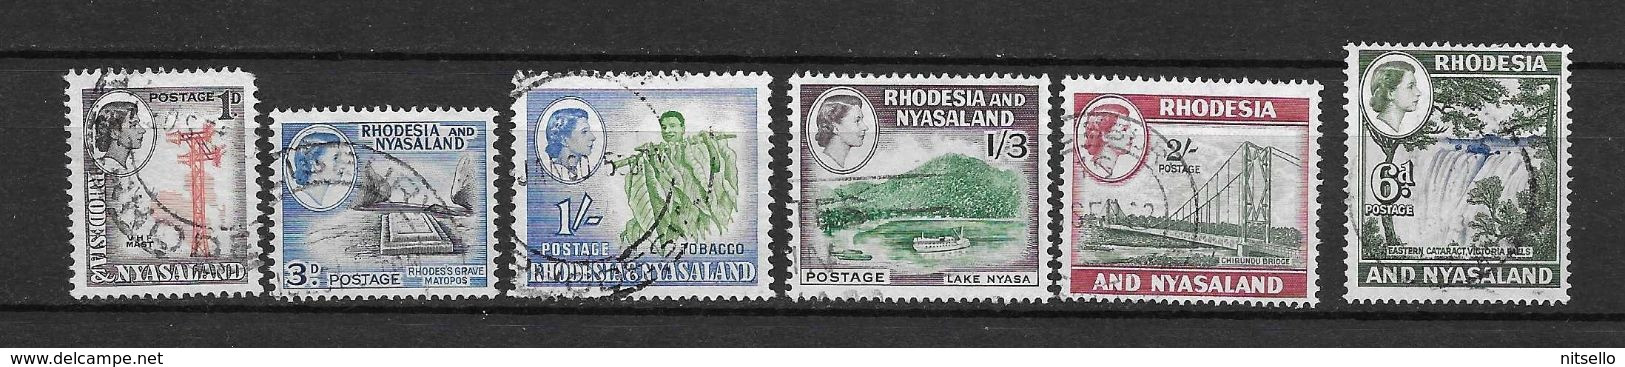 LOTE 2219A  ///   (C012)  RODESIA & NYASALAND          ¡¡¡¡¡ LIQUIDATION!!!!! - Rhodesia & Nyasaland (1954-1963)